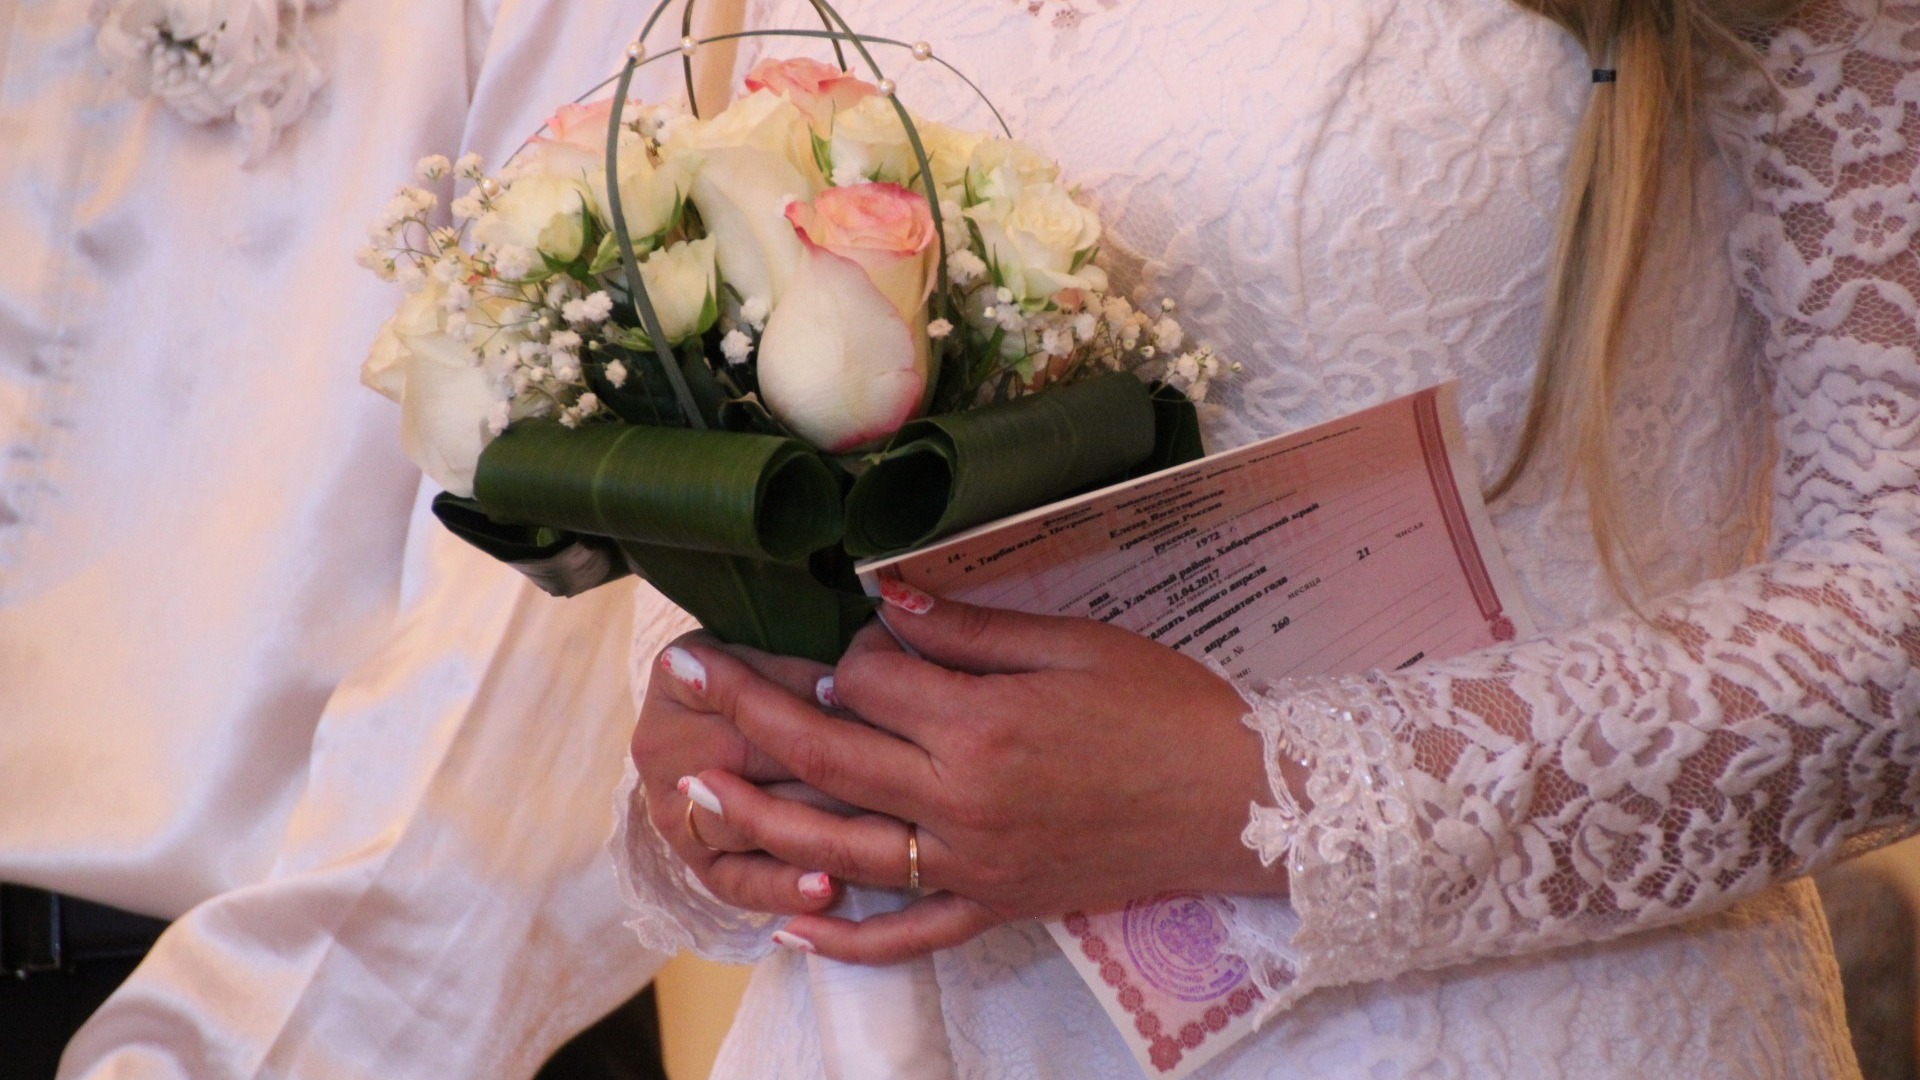 Брак по расчету: удмуртские статистики узнали все о семьях в регионе